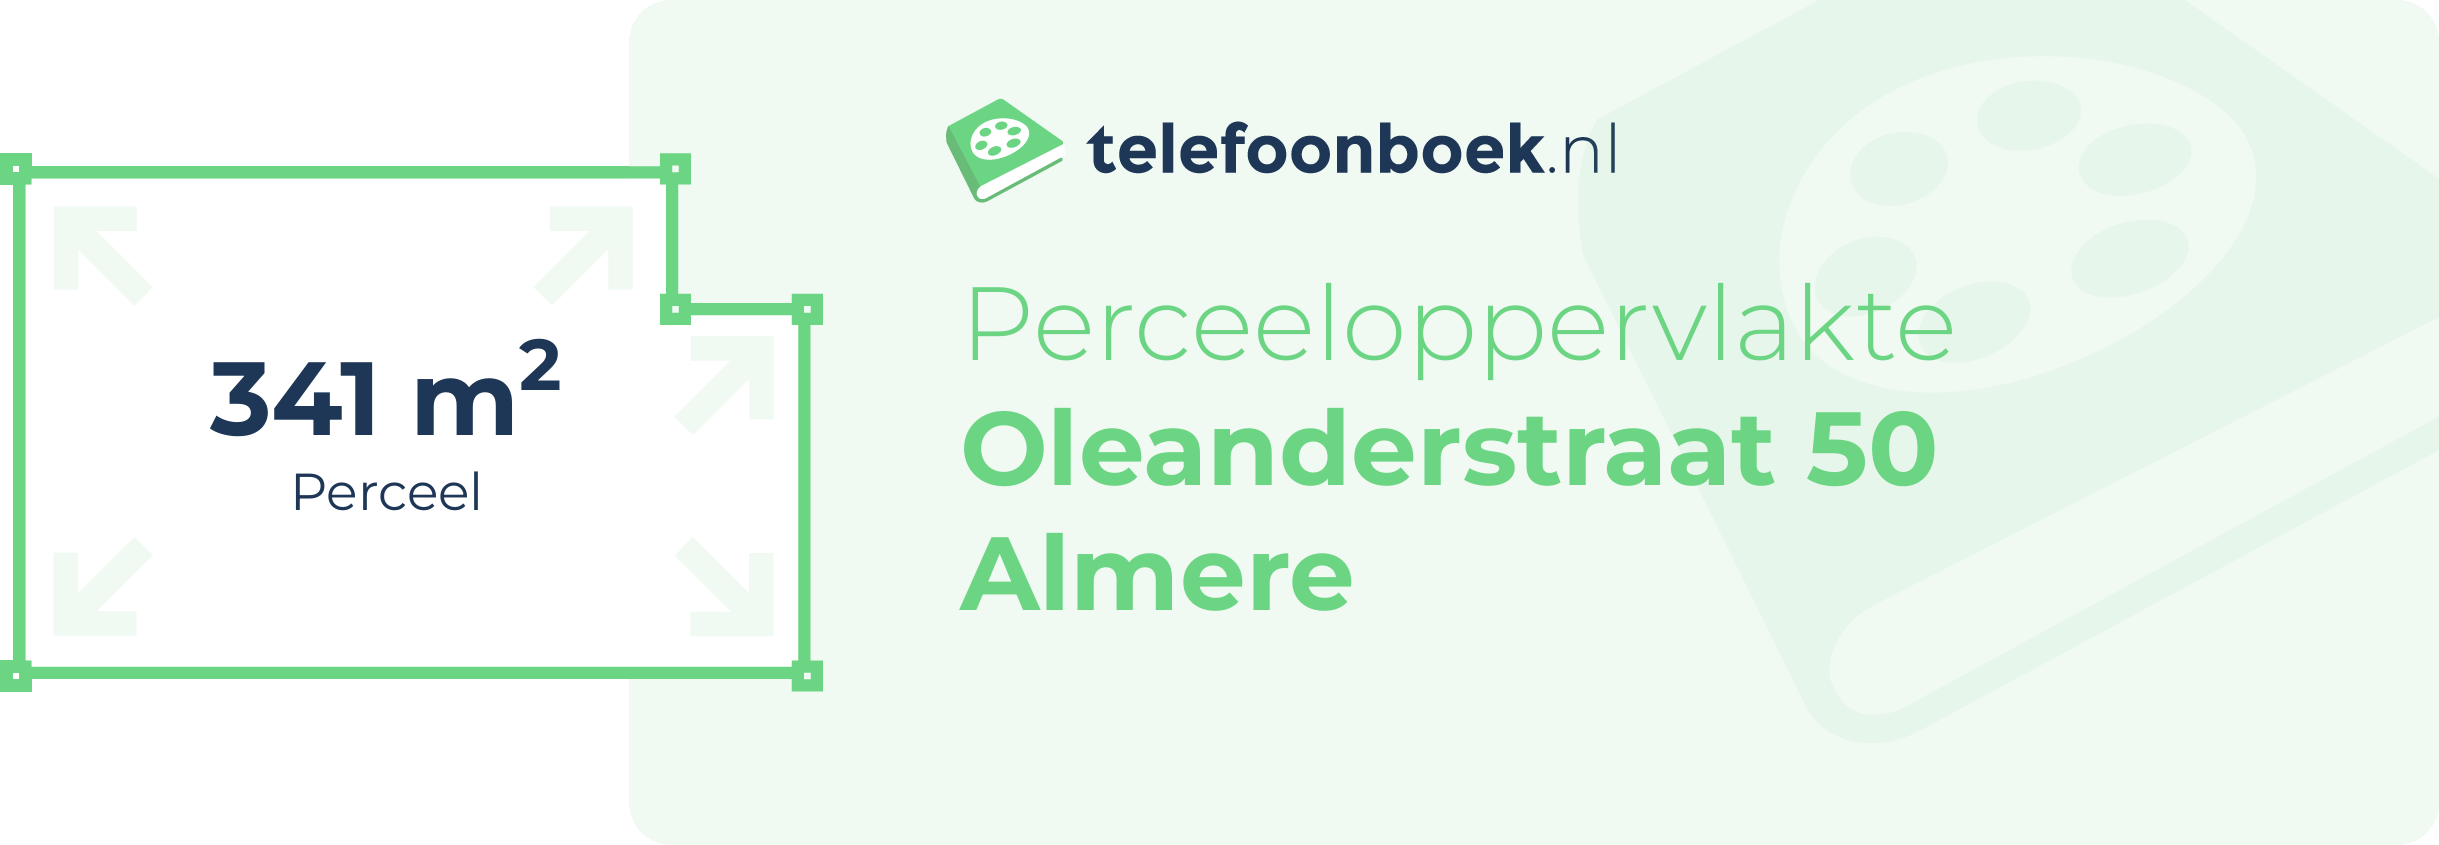 Perceeloppervlakte Oleanderstraat 50 Almere